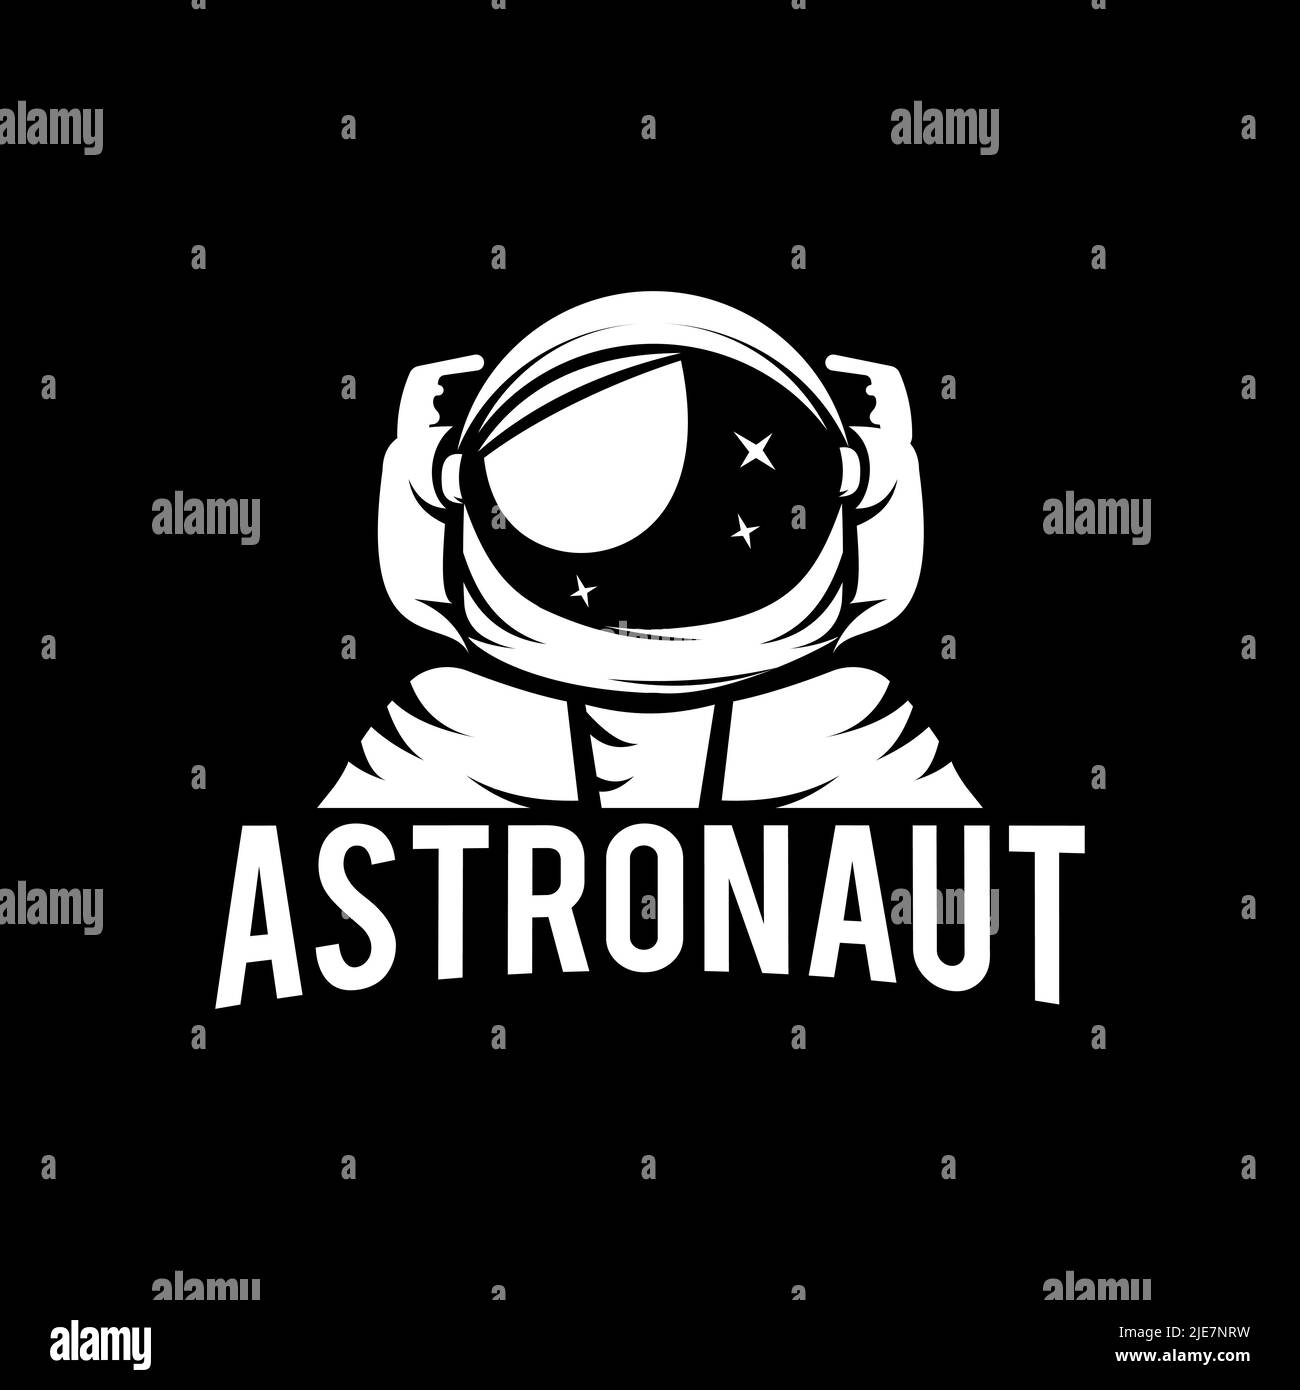 Raumfahrt Astronaut Helm oder Spaceman Logo vintage Label Abzeichen Design Vektor Illustration. Star Planet Galaxy Space Logo Stock Vektor